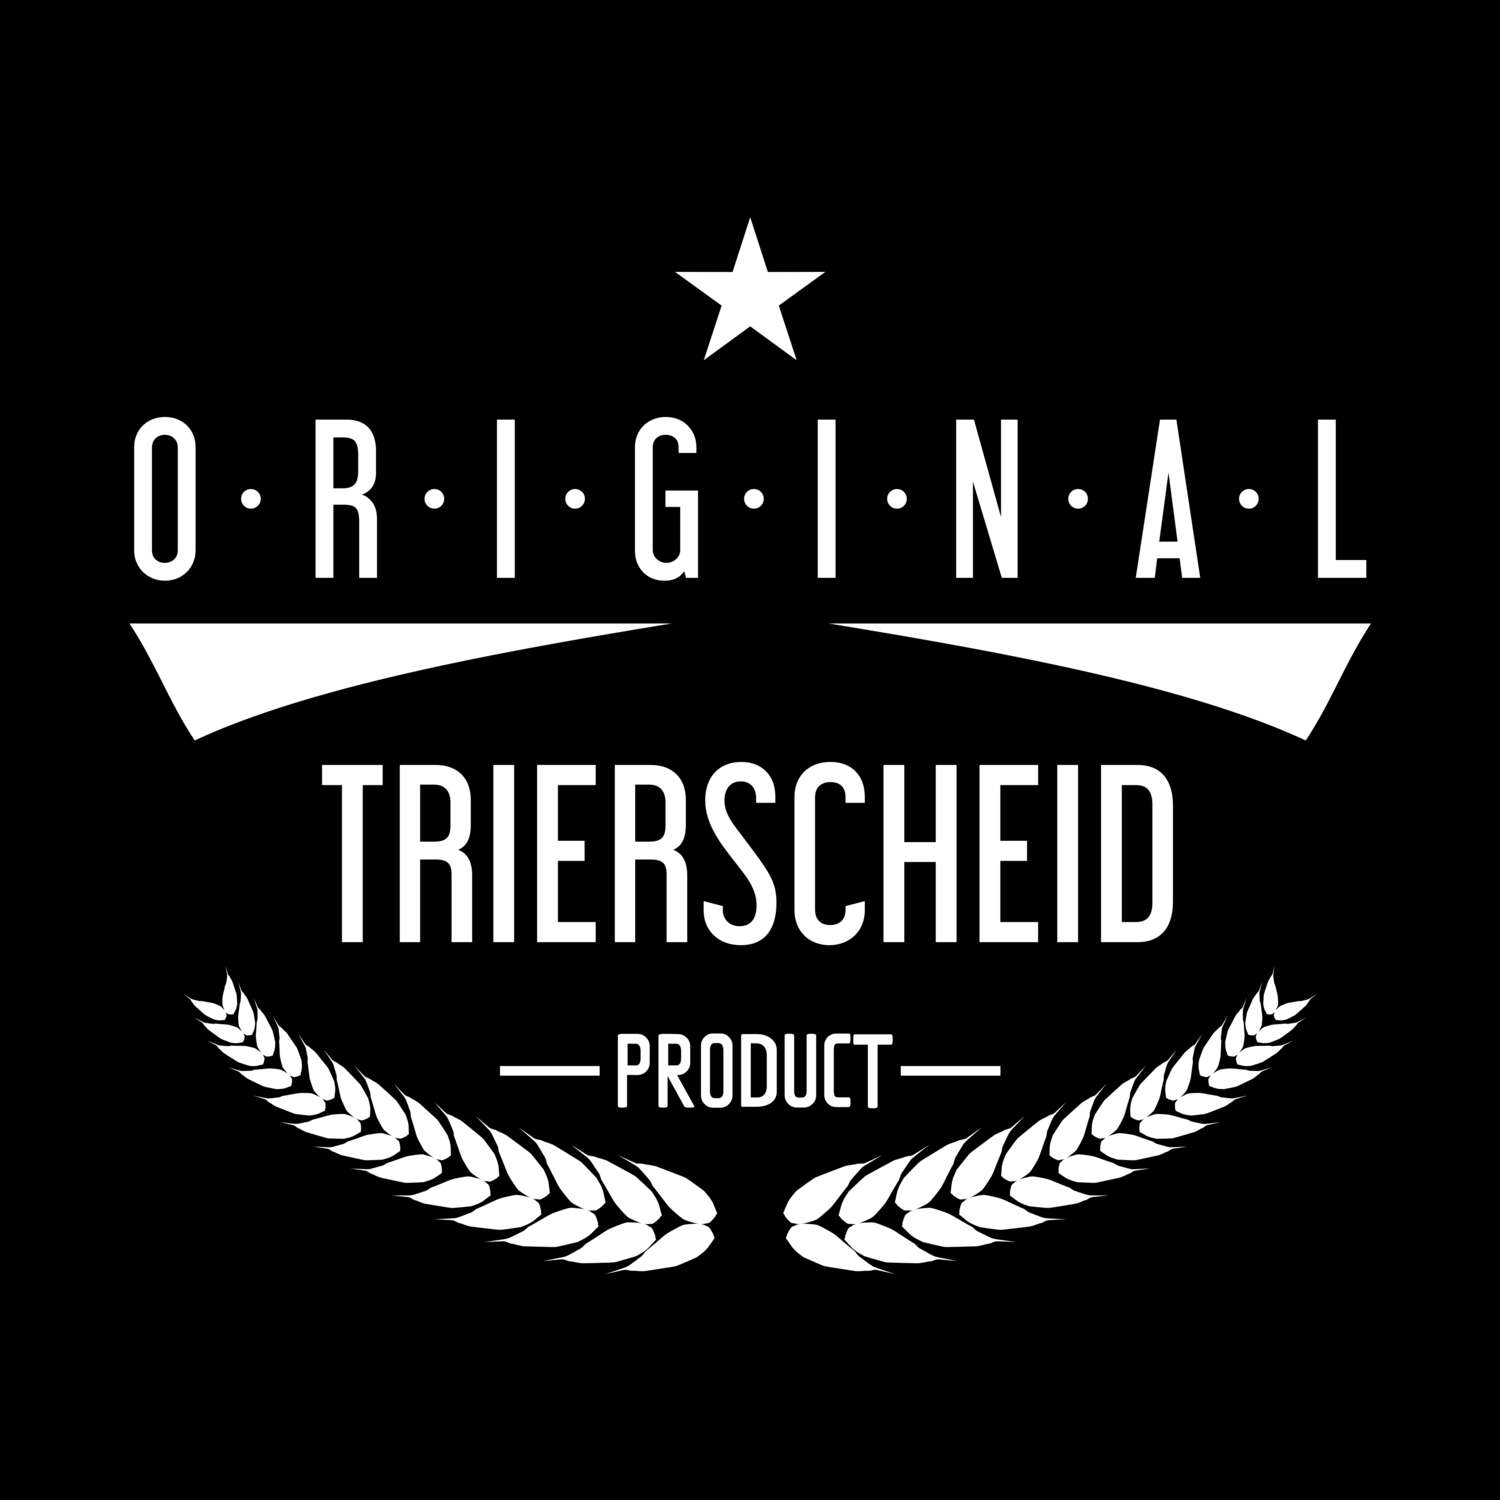 Trierscheid T-Shirt »Original Product«